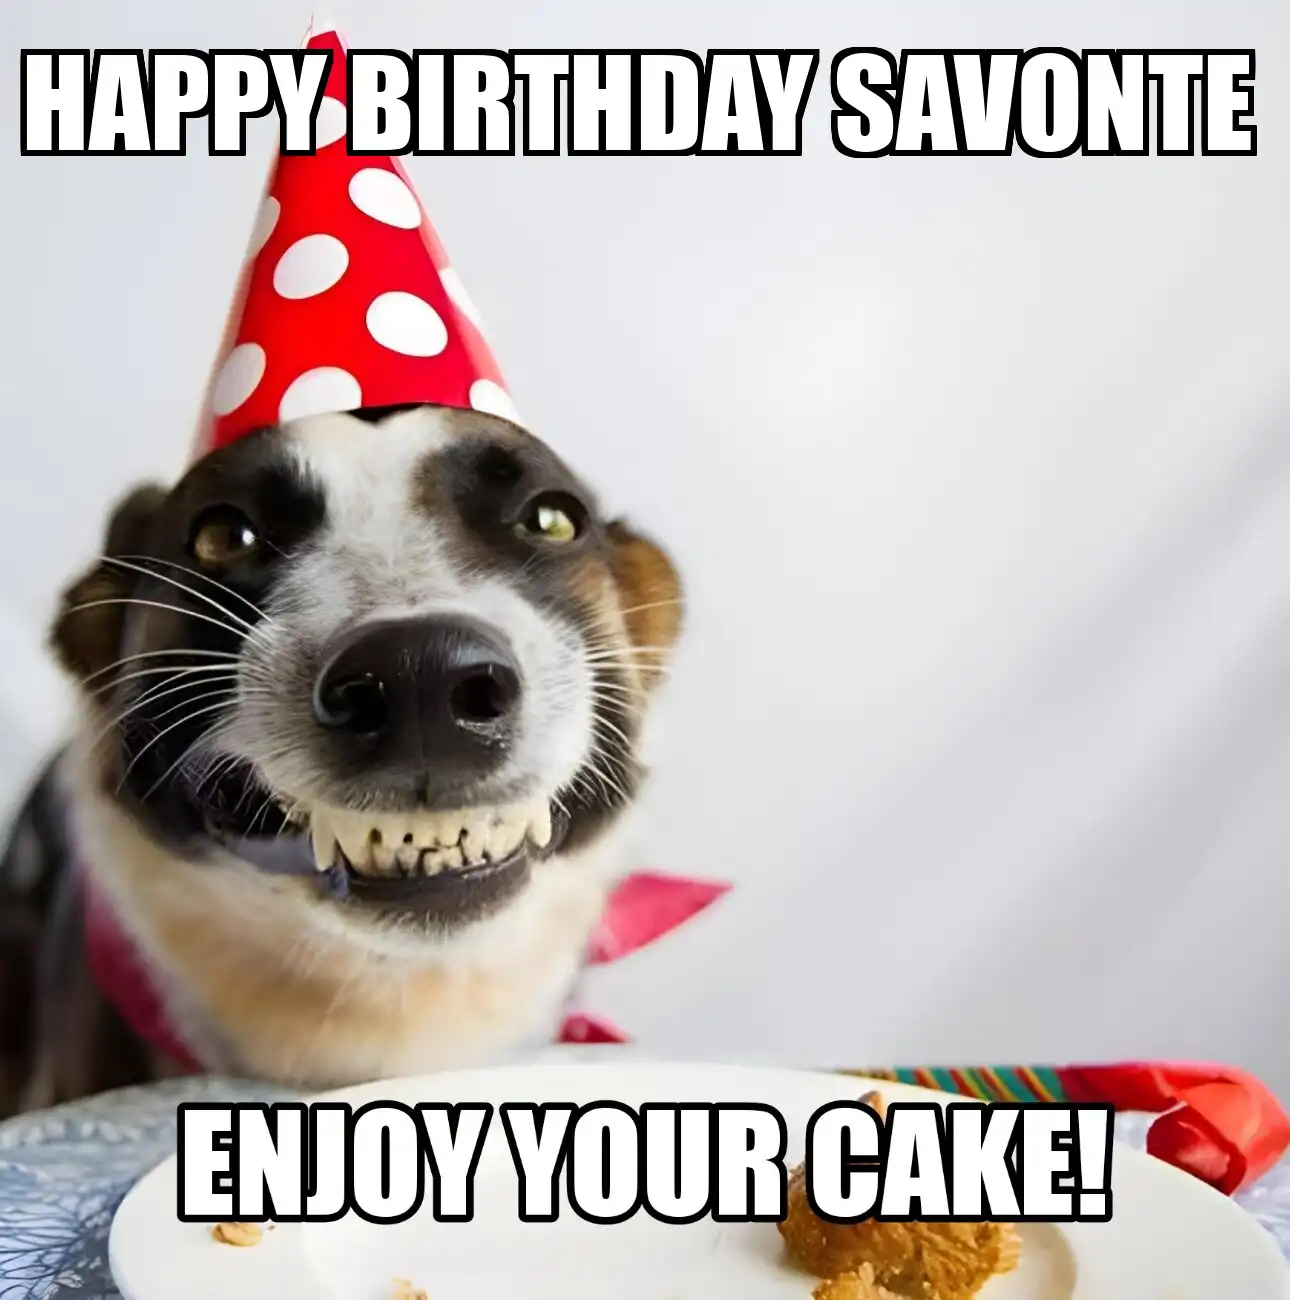 Happy Birthday Savonte Enjoy Your Cake Dog Meme